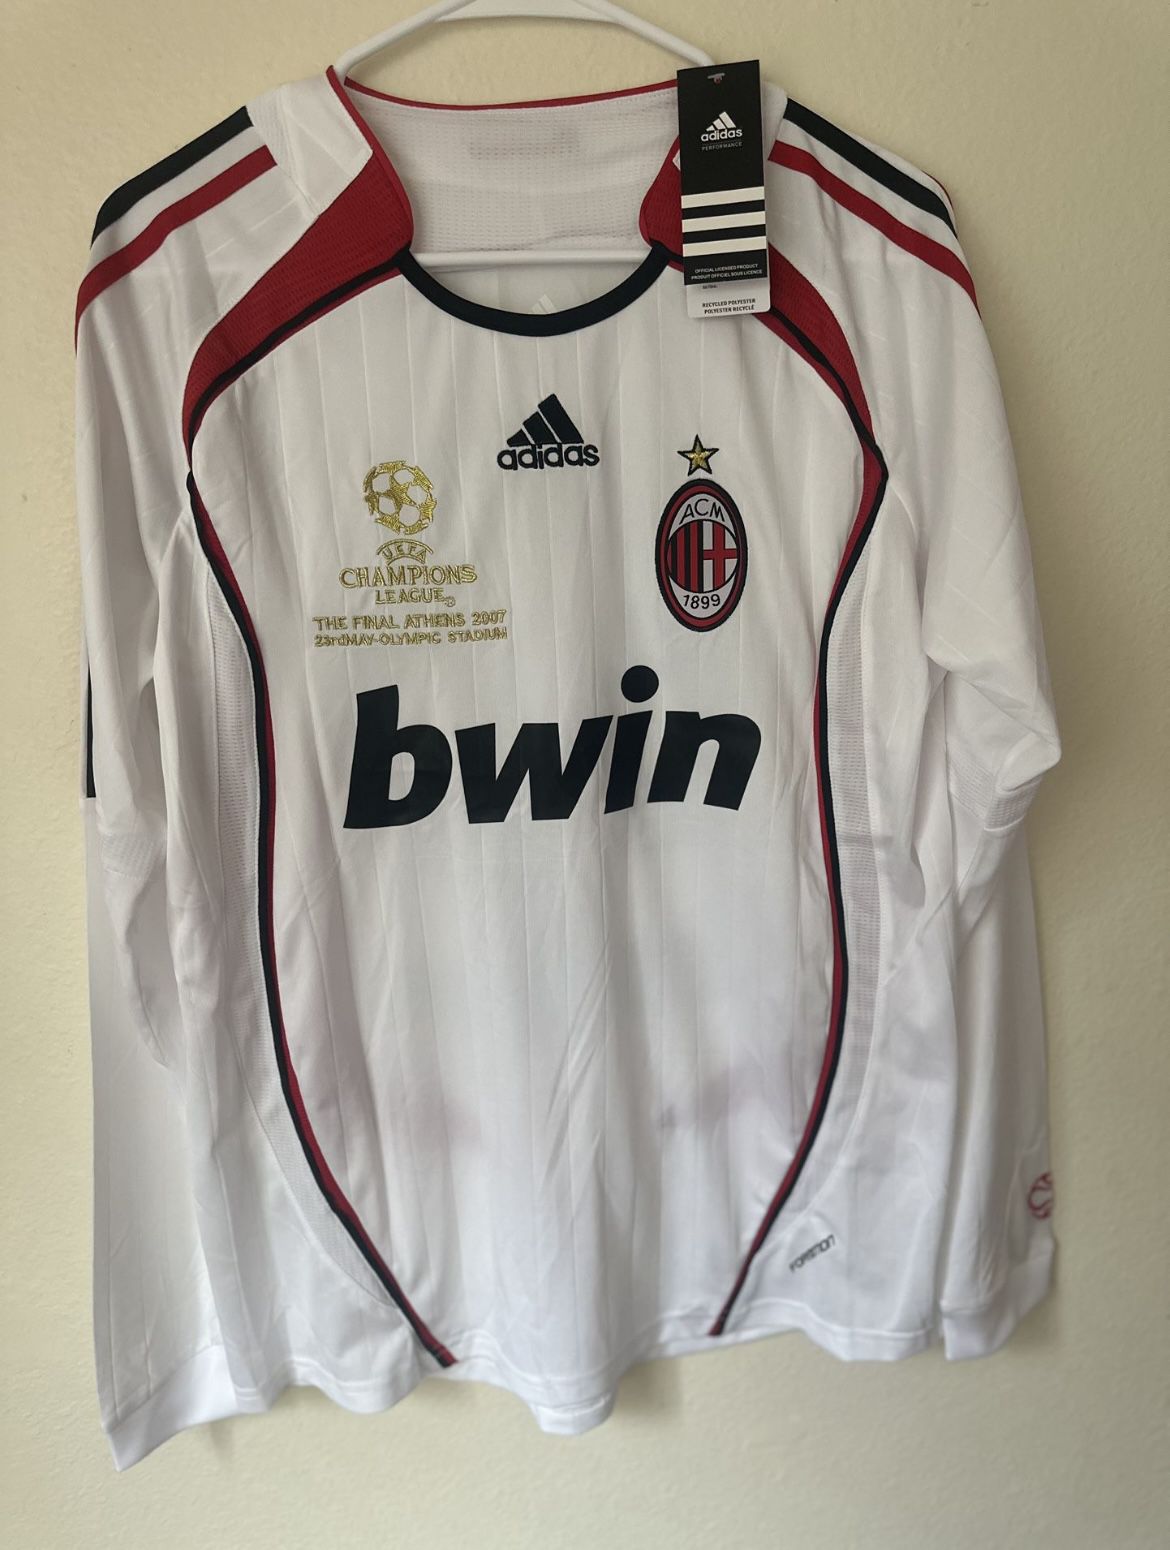 Kaka AC Milan 2007 Jersey